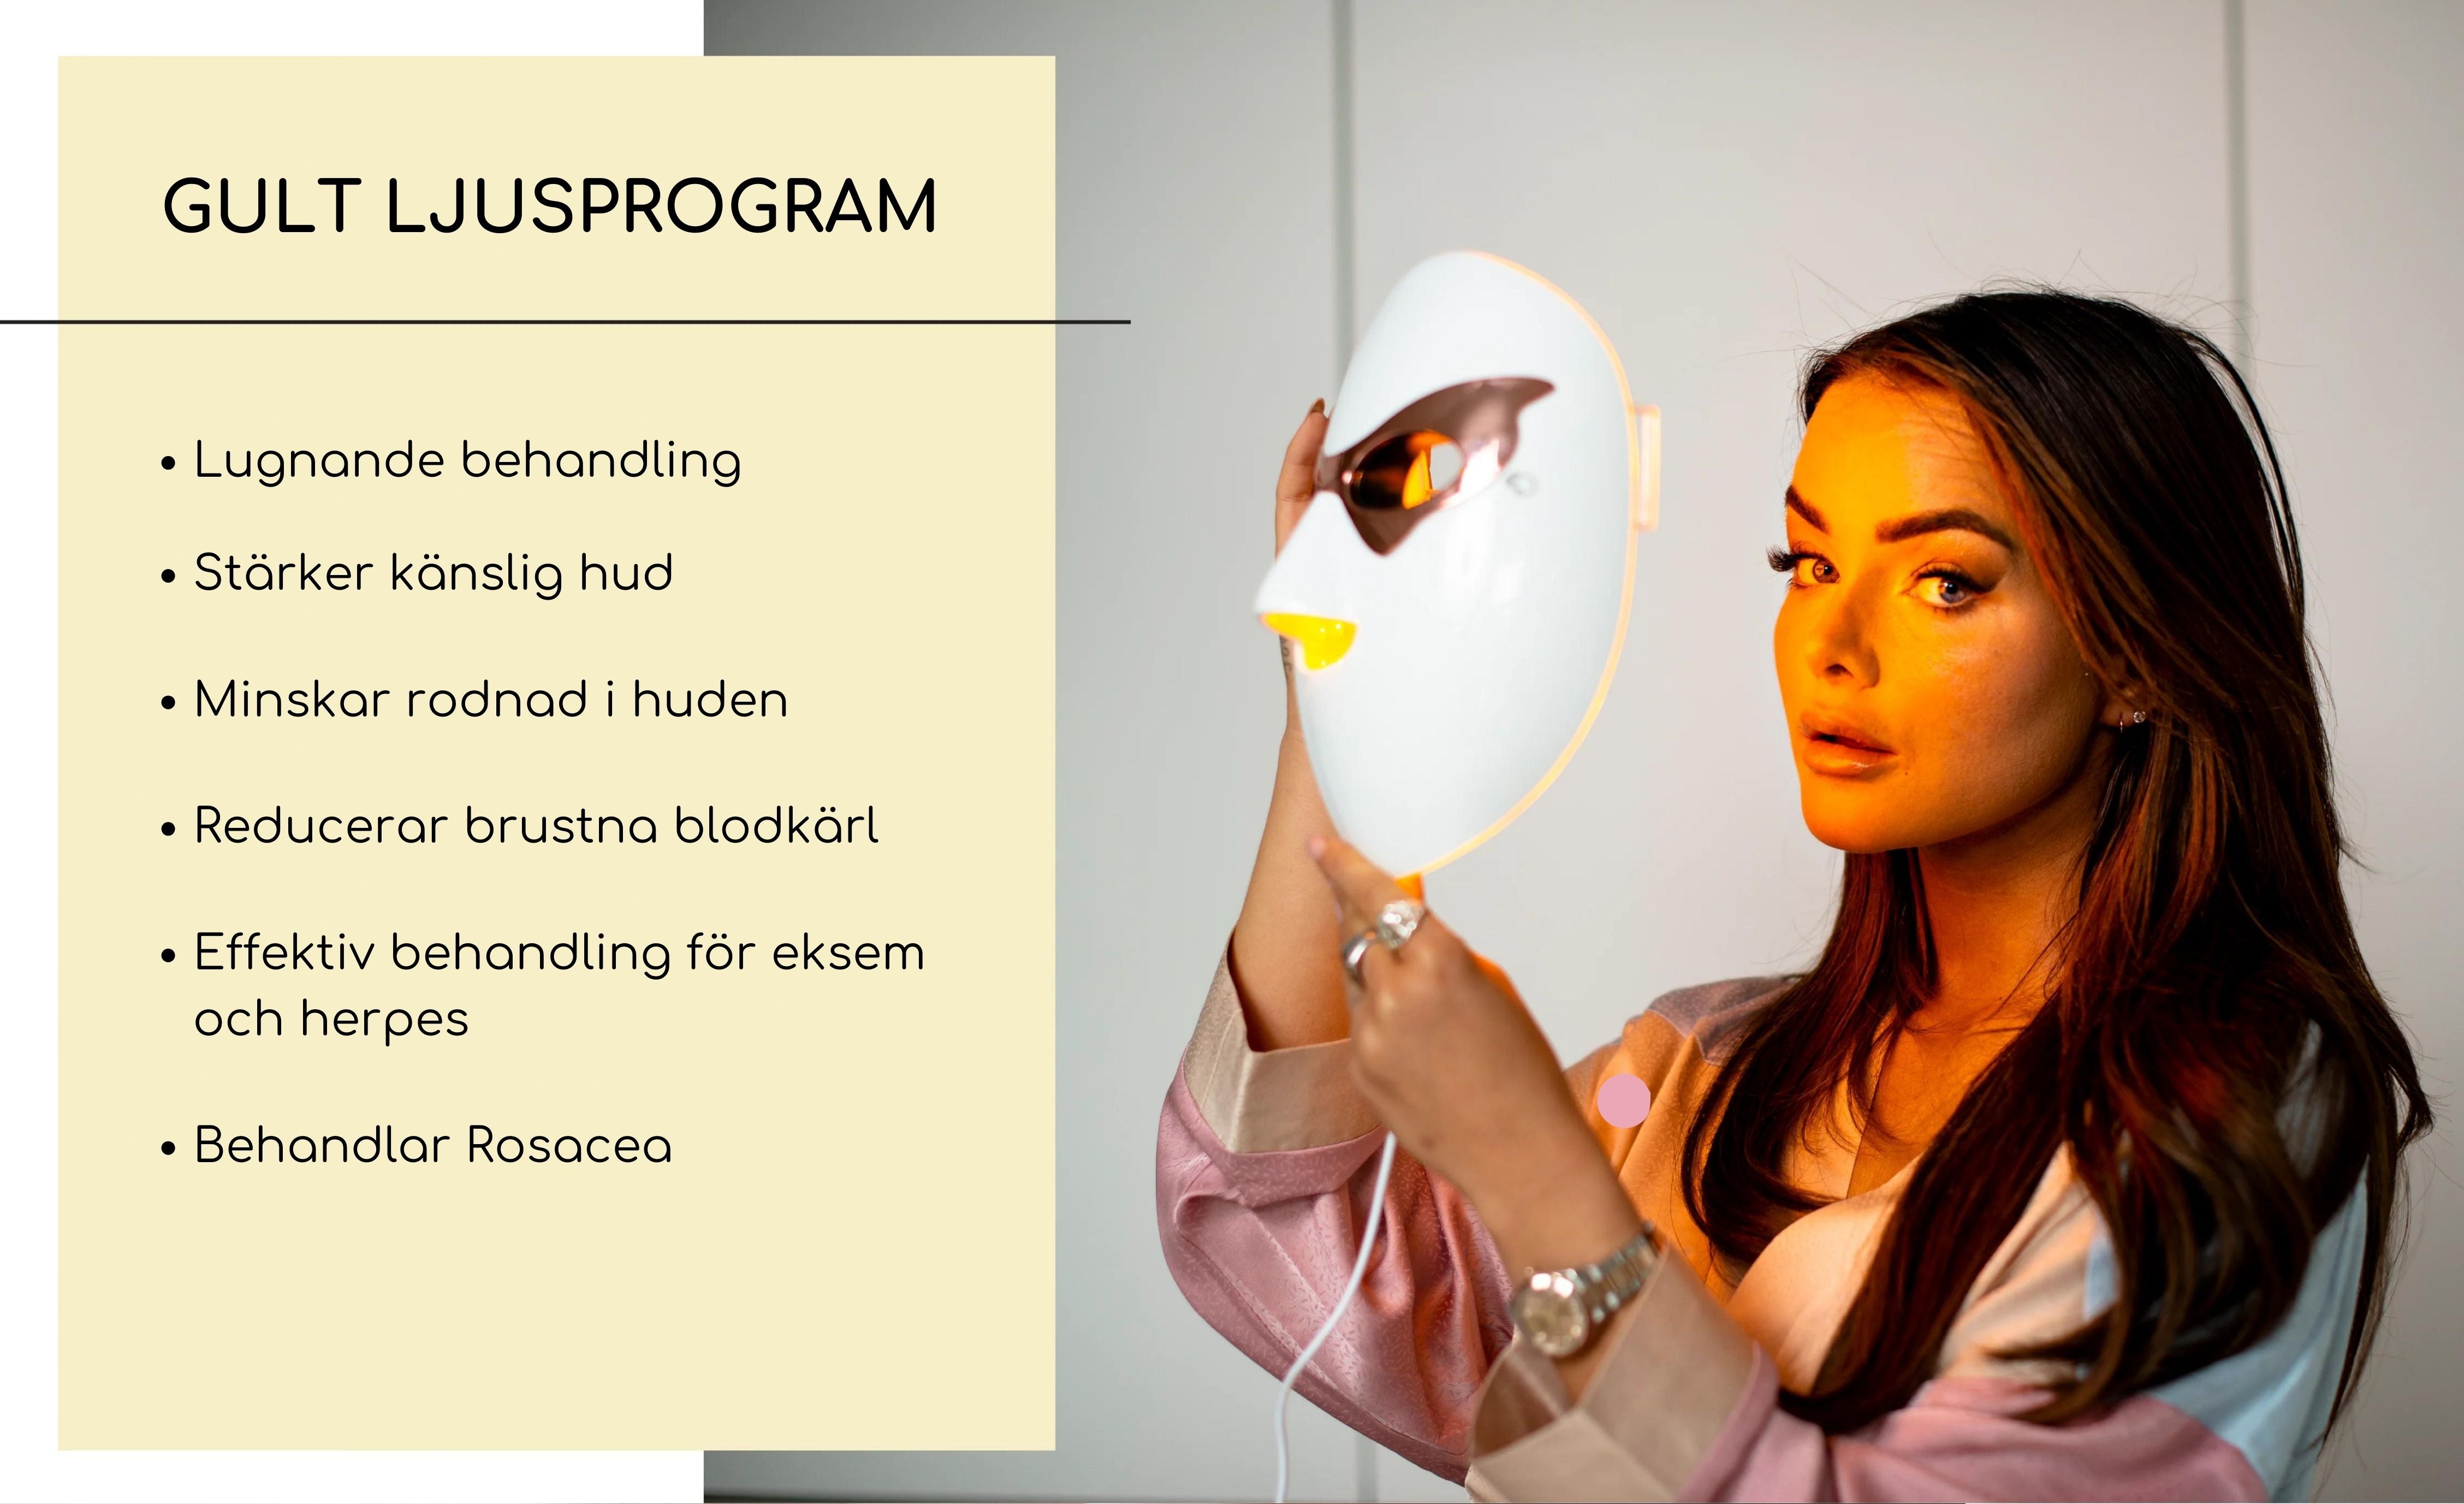 Gult ljusprogram på LED-mask erbjuder lugnande behandling, stärker känslig hud och minskar rodnad.